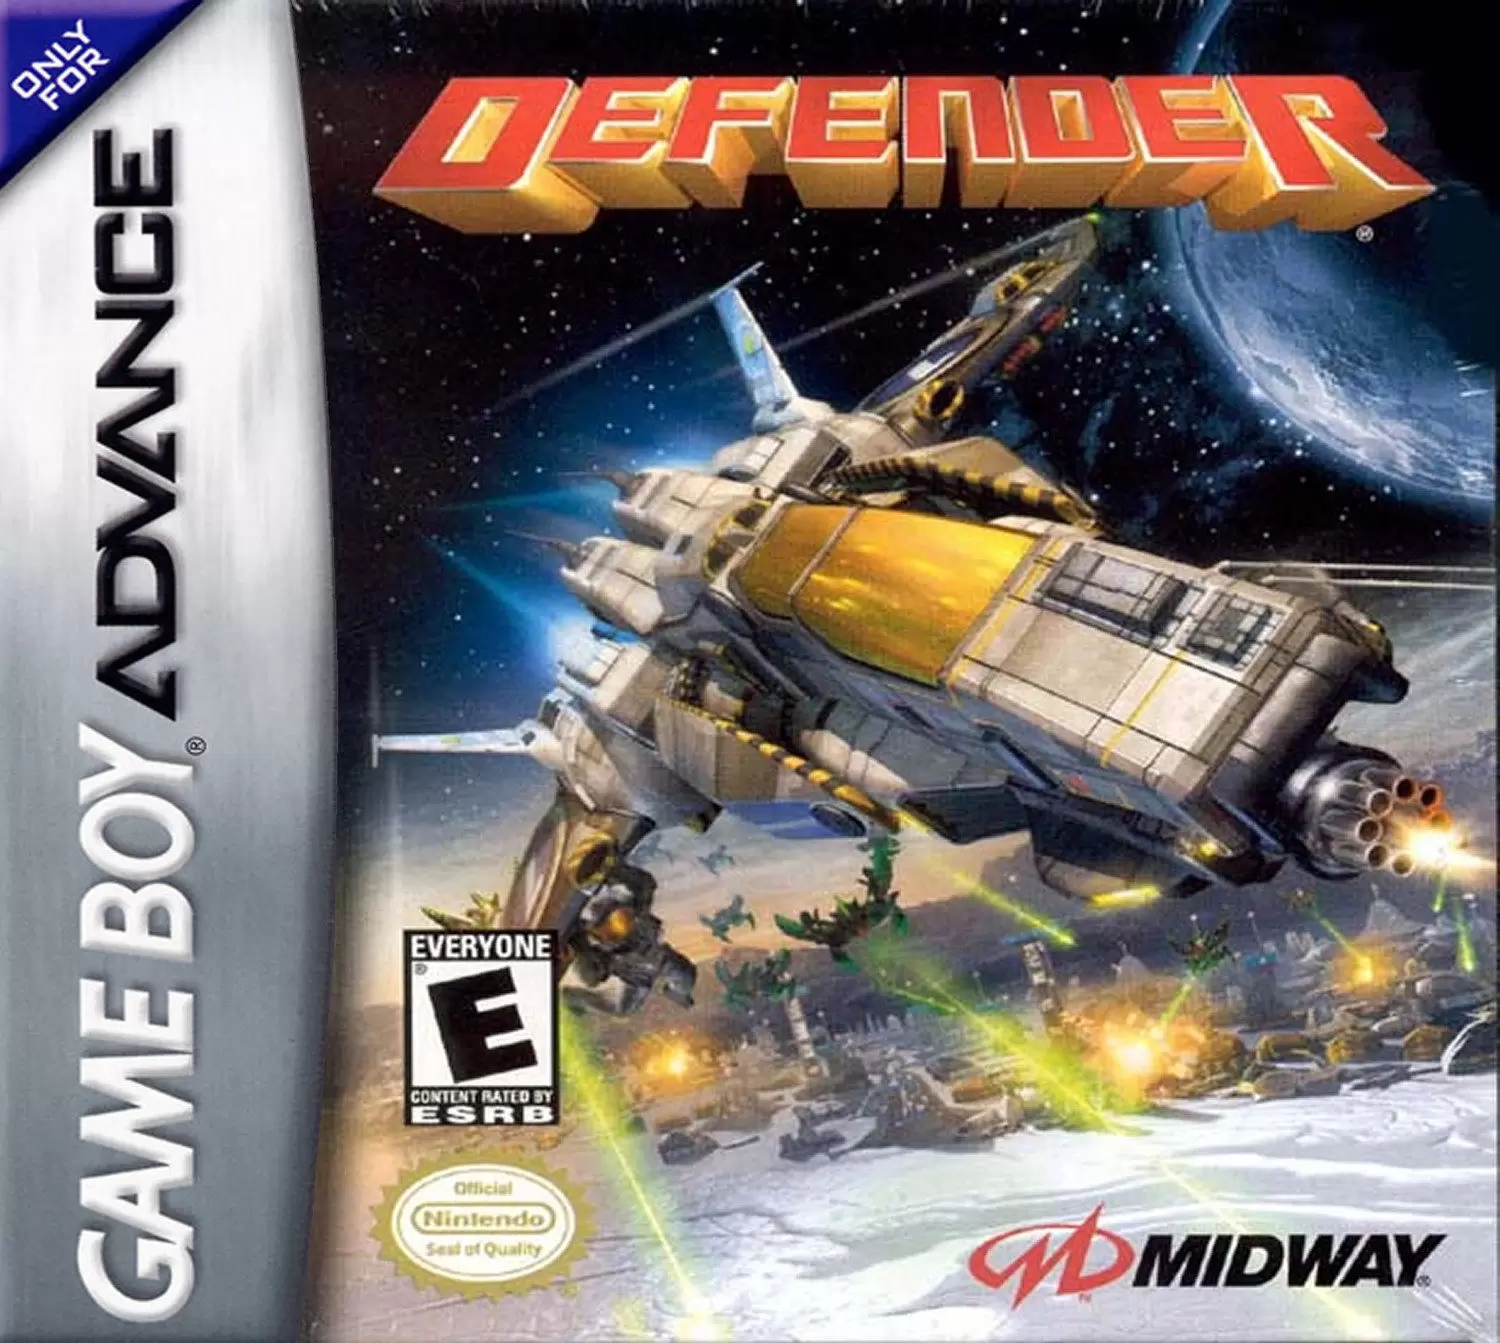 Game Boy Advance Games - Defender